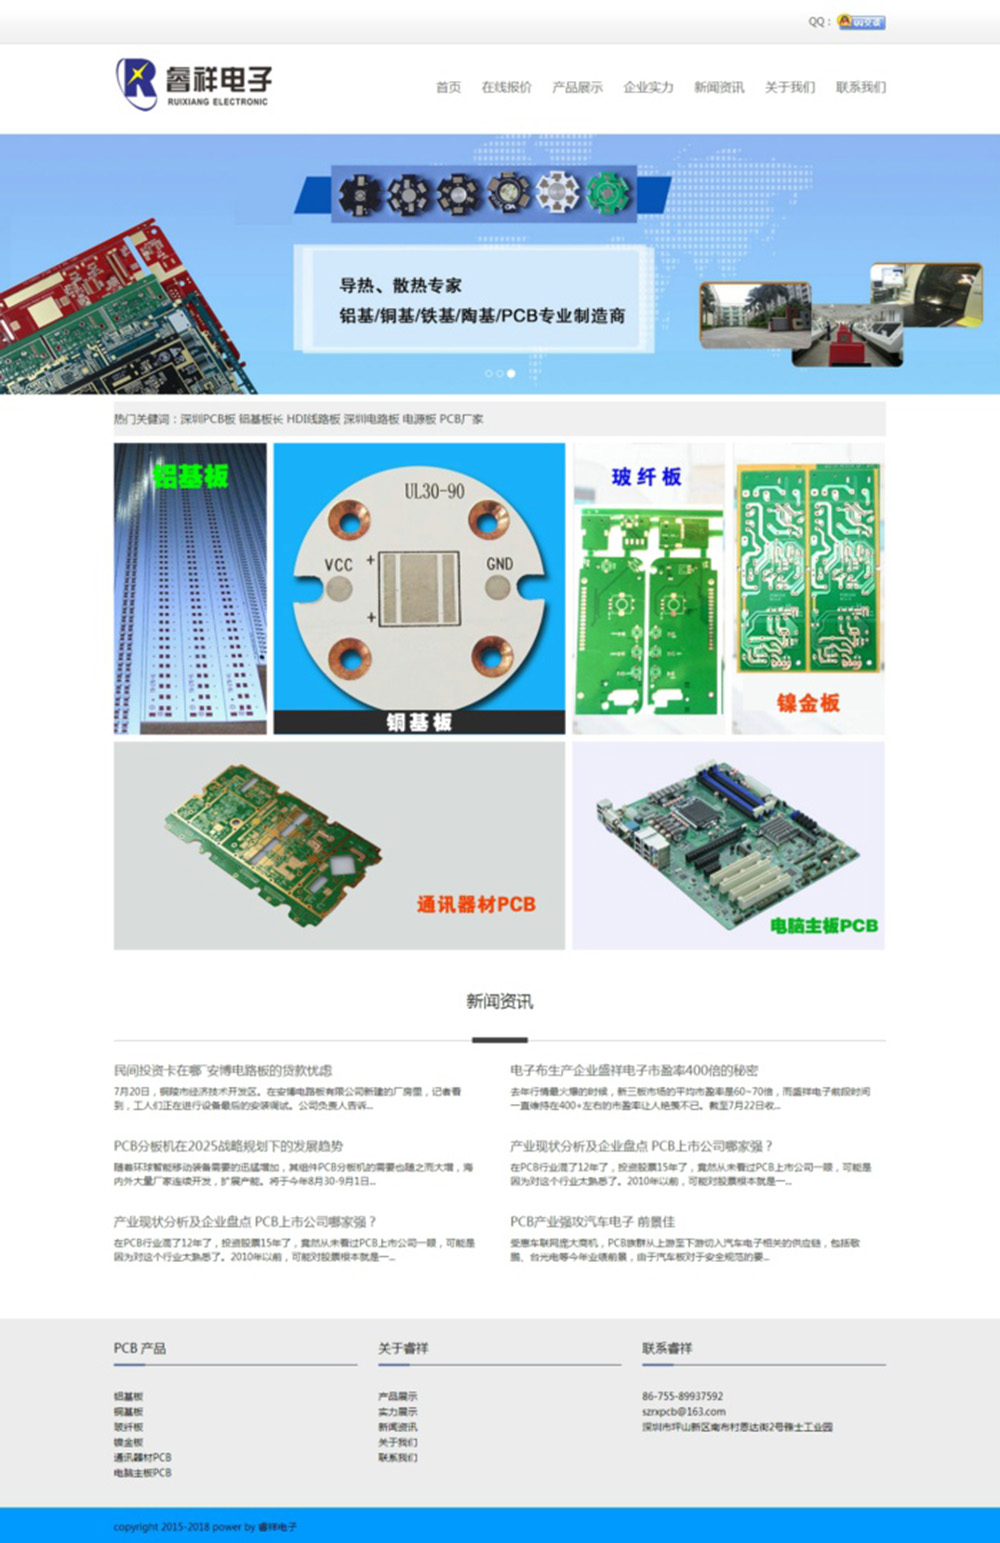 深圳电子科技公司主页图